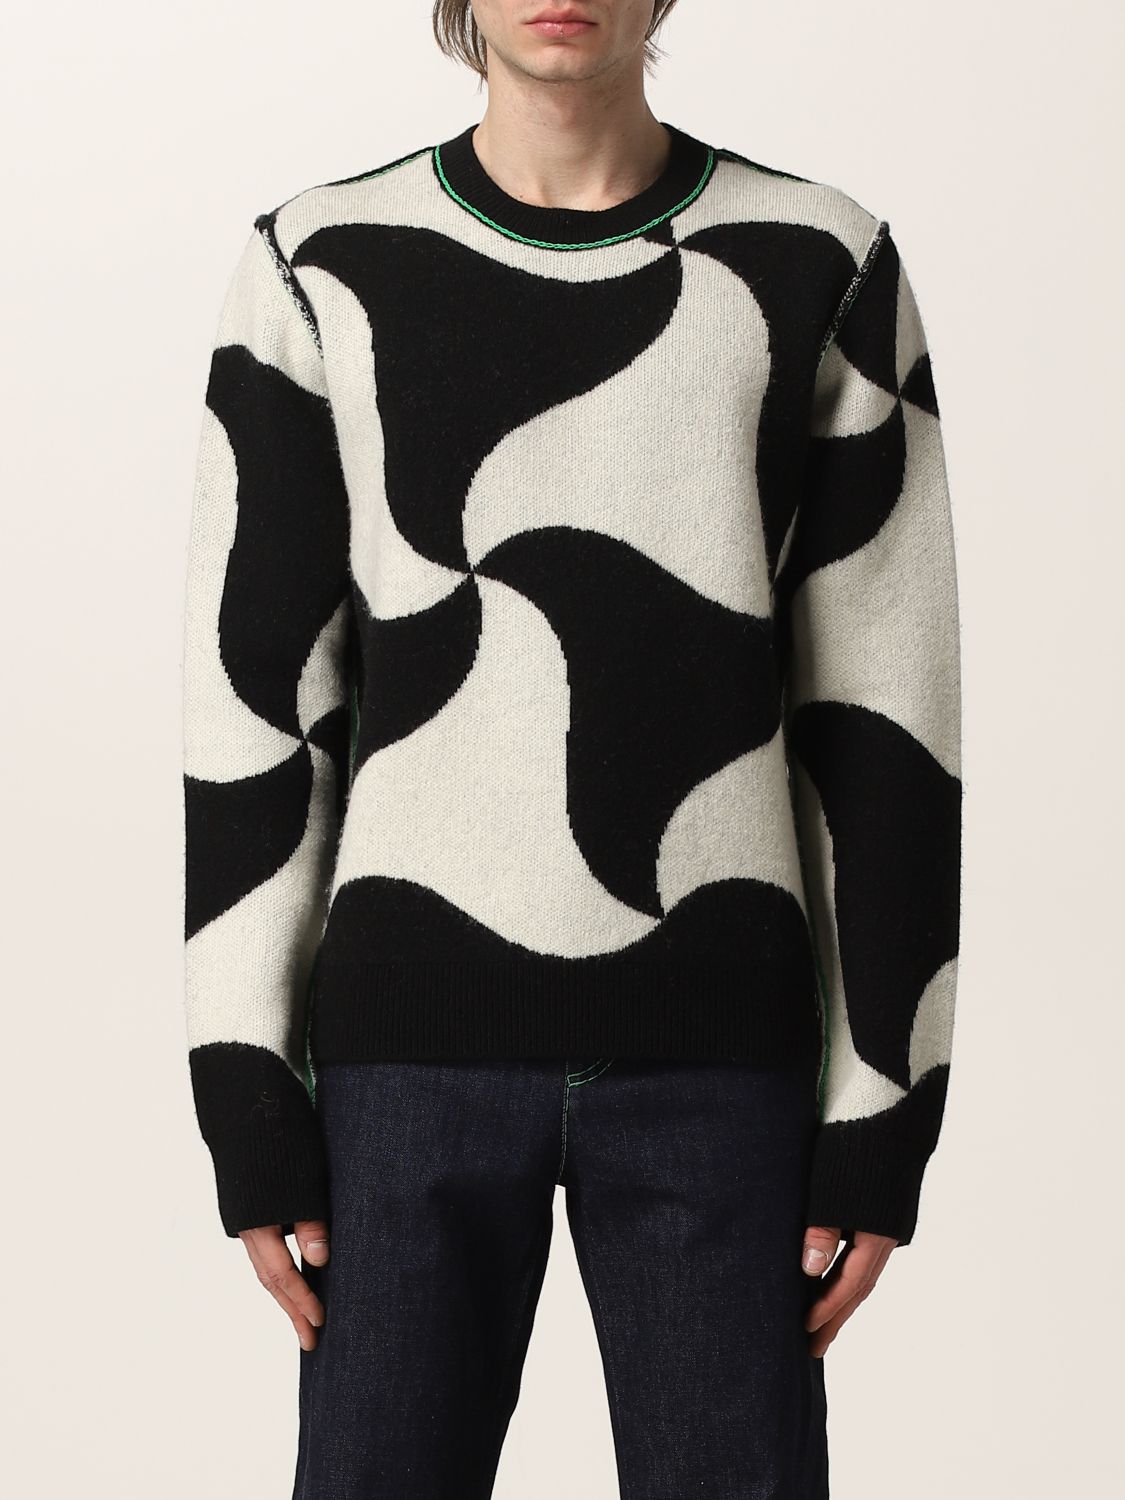 BOTTEGA VENETA: wool sweater - Black | Bottega Veneta sweater ...